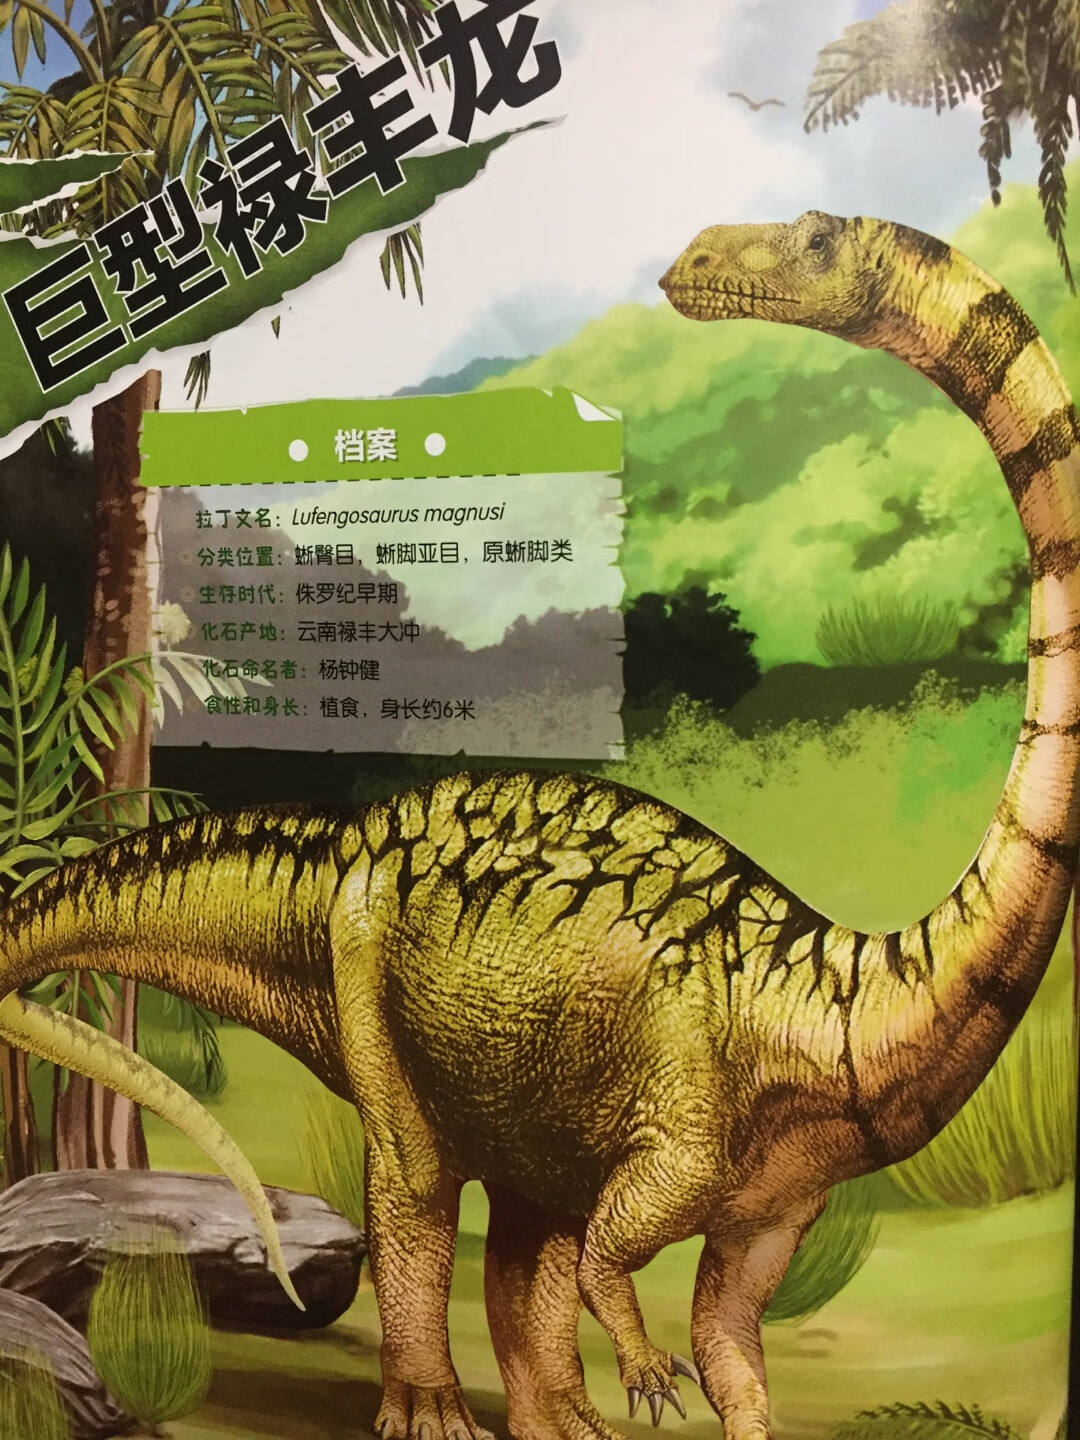 哇，恐龙来了！多幅精美图片准确还原史前恢弘场景，妙趣横生的解说词带你亲身徜徉远古世界。所有你想知道的，你不知道的，有关于史前生物的一切，都将在《中国恐龙百科全书》中找到答案！